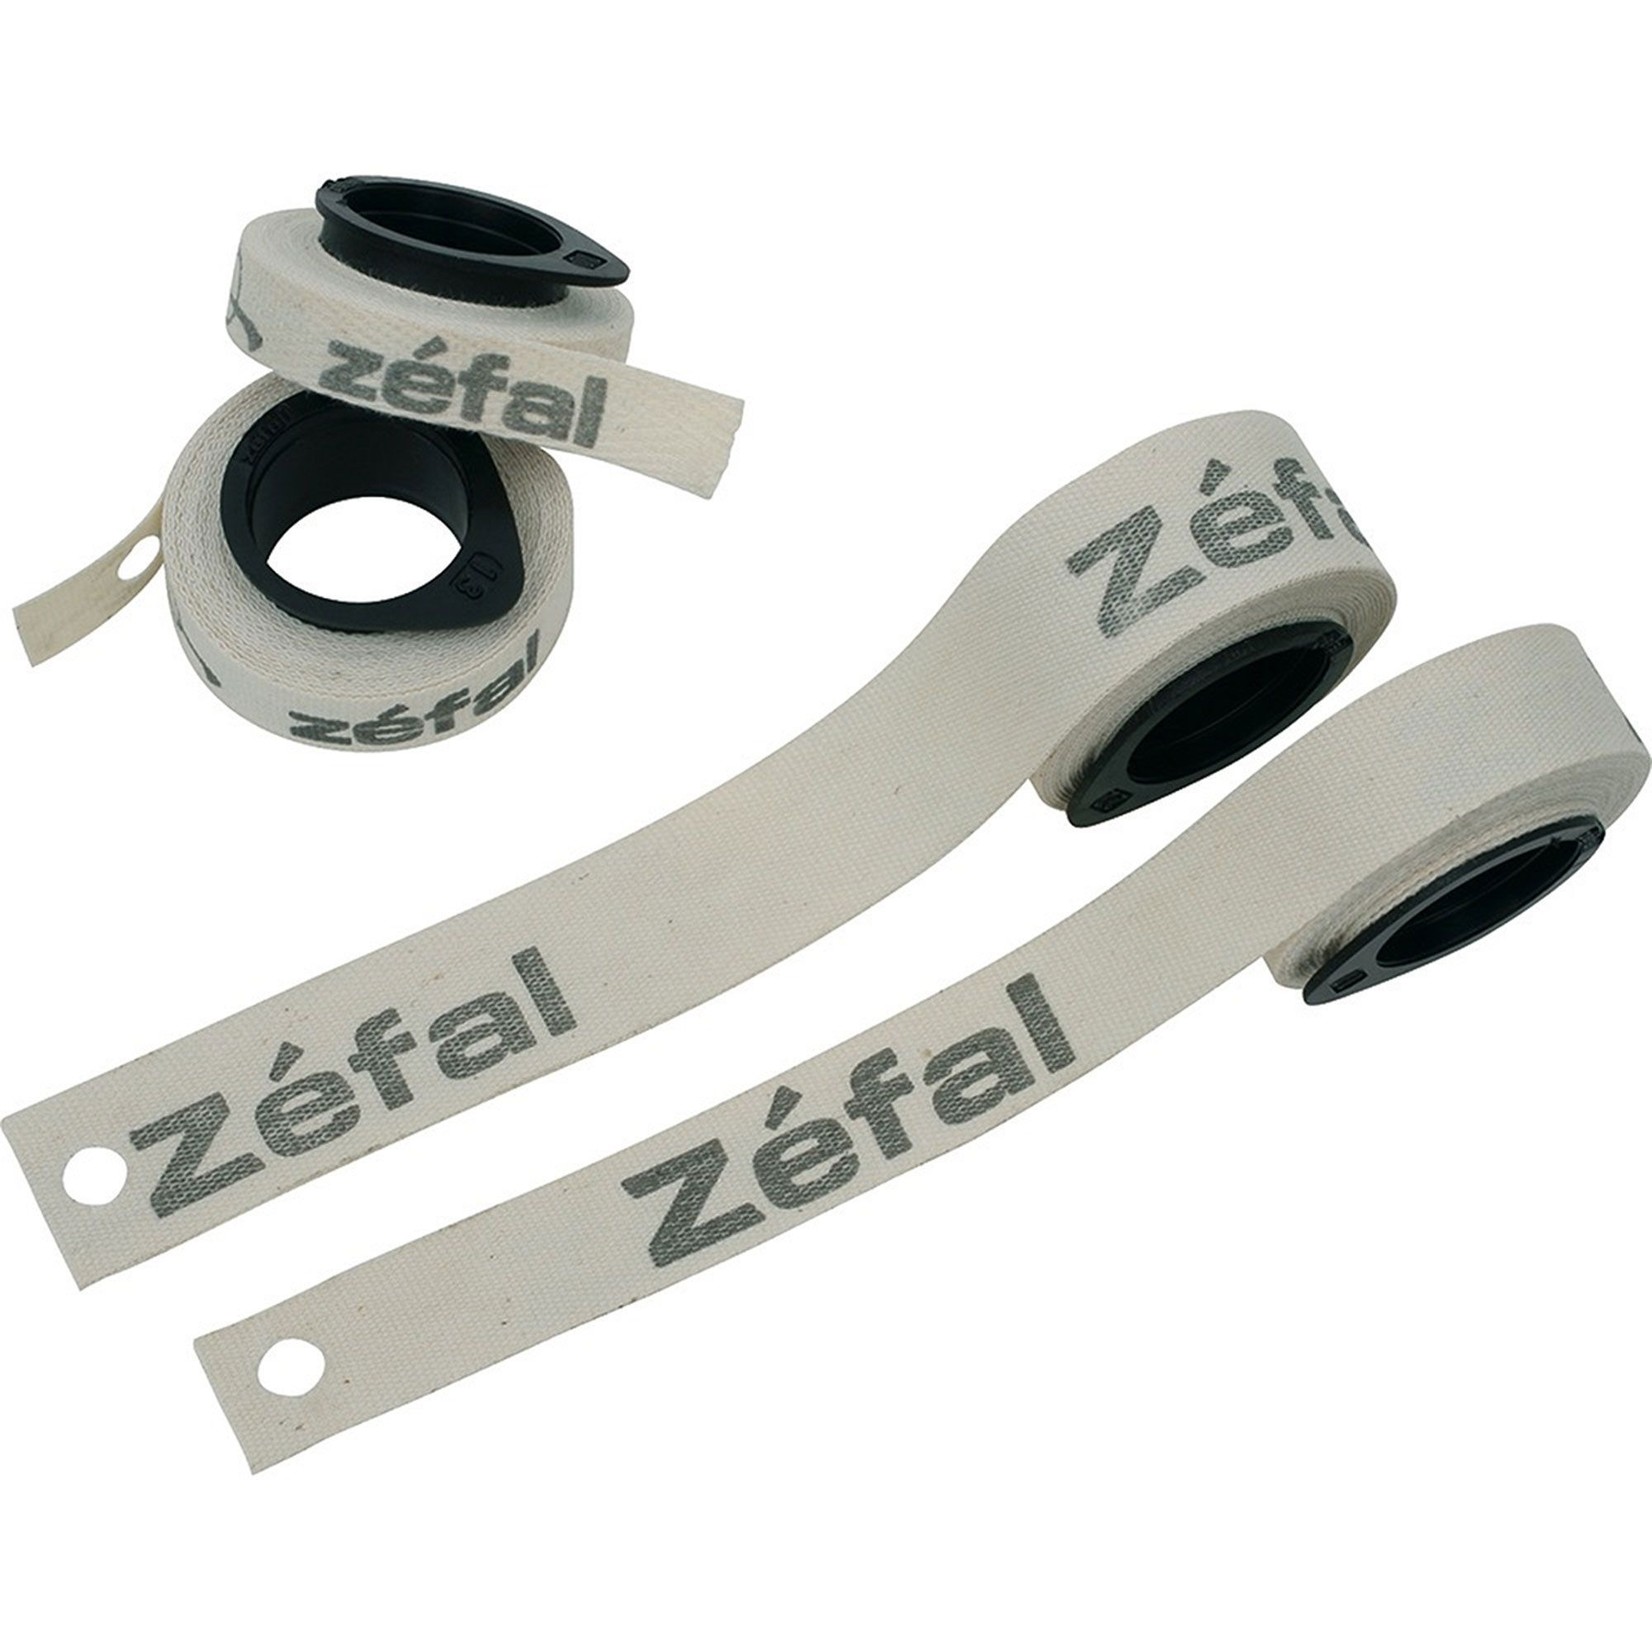 Zefal Zefal Cotton Rim Tapes - 13mm